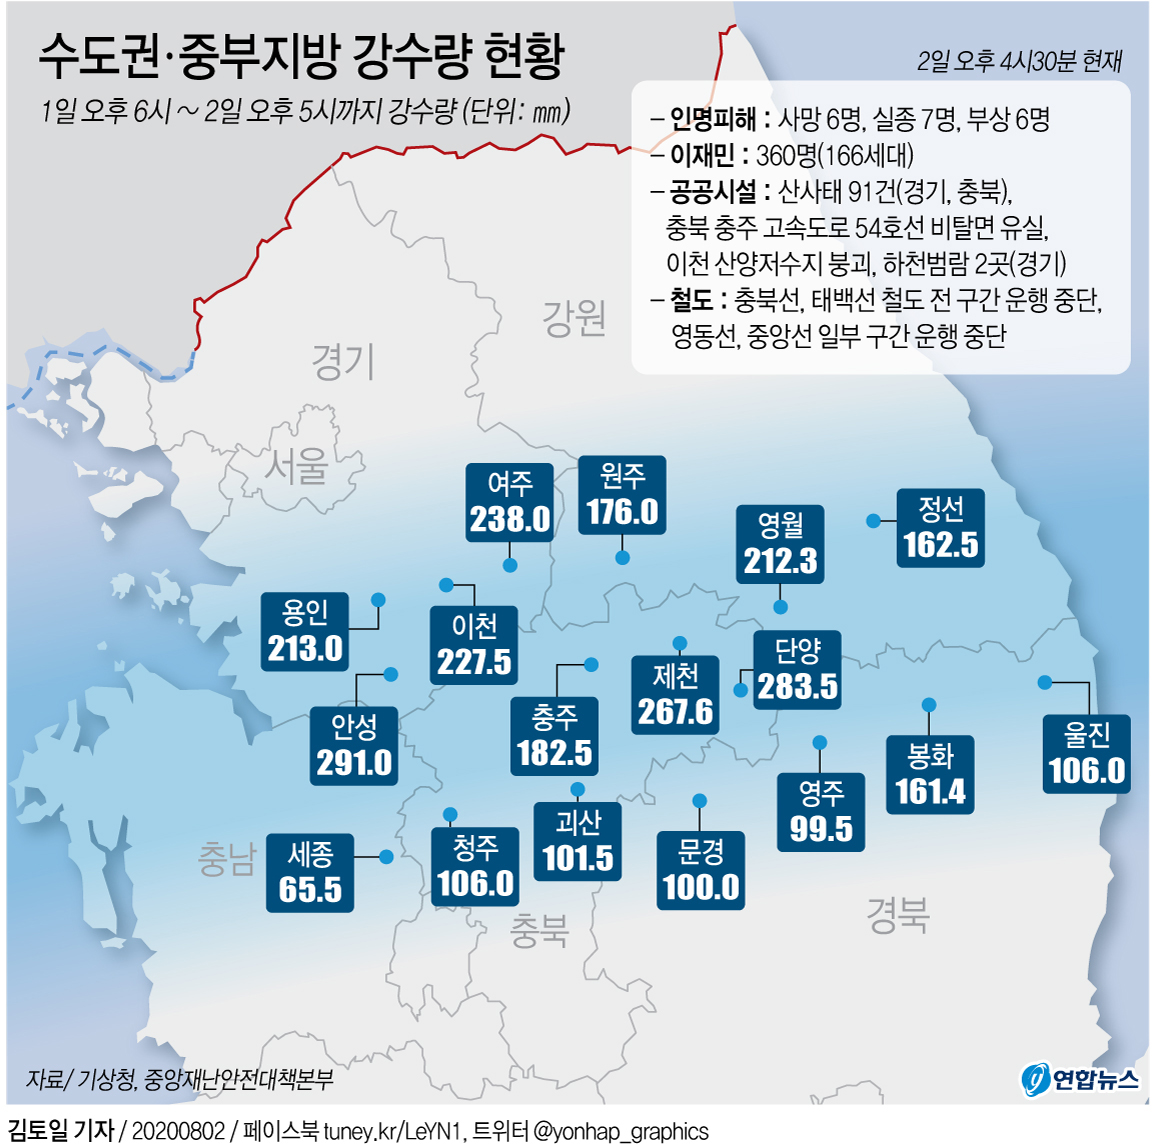 [그래픽] 수도권ㆍ중부지방 강수량 현황(오후 5시 현재)